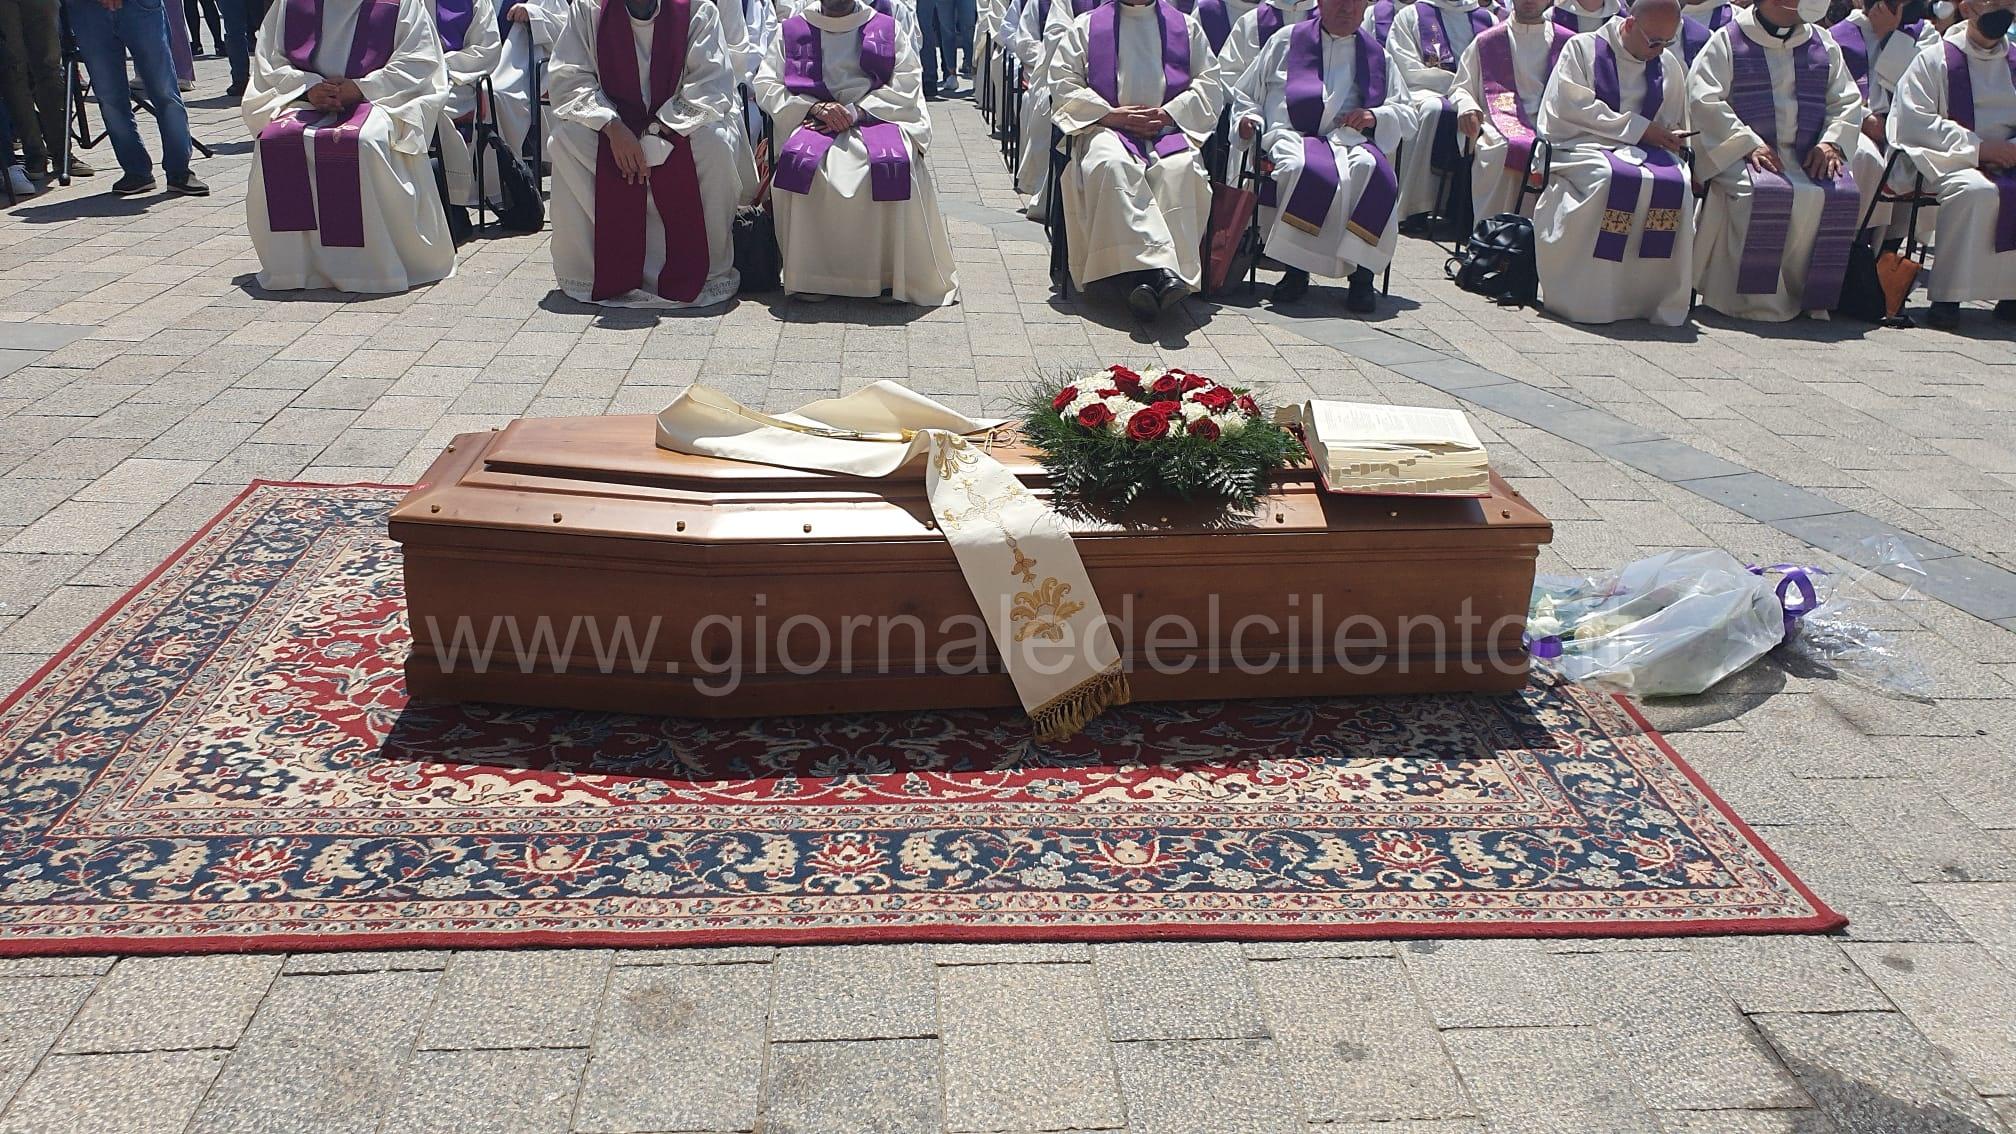 Scario in lacrime, una folla immensa per i funerali di don Tonino Cetrangolo | FOTO